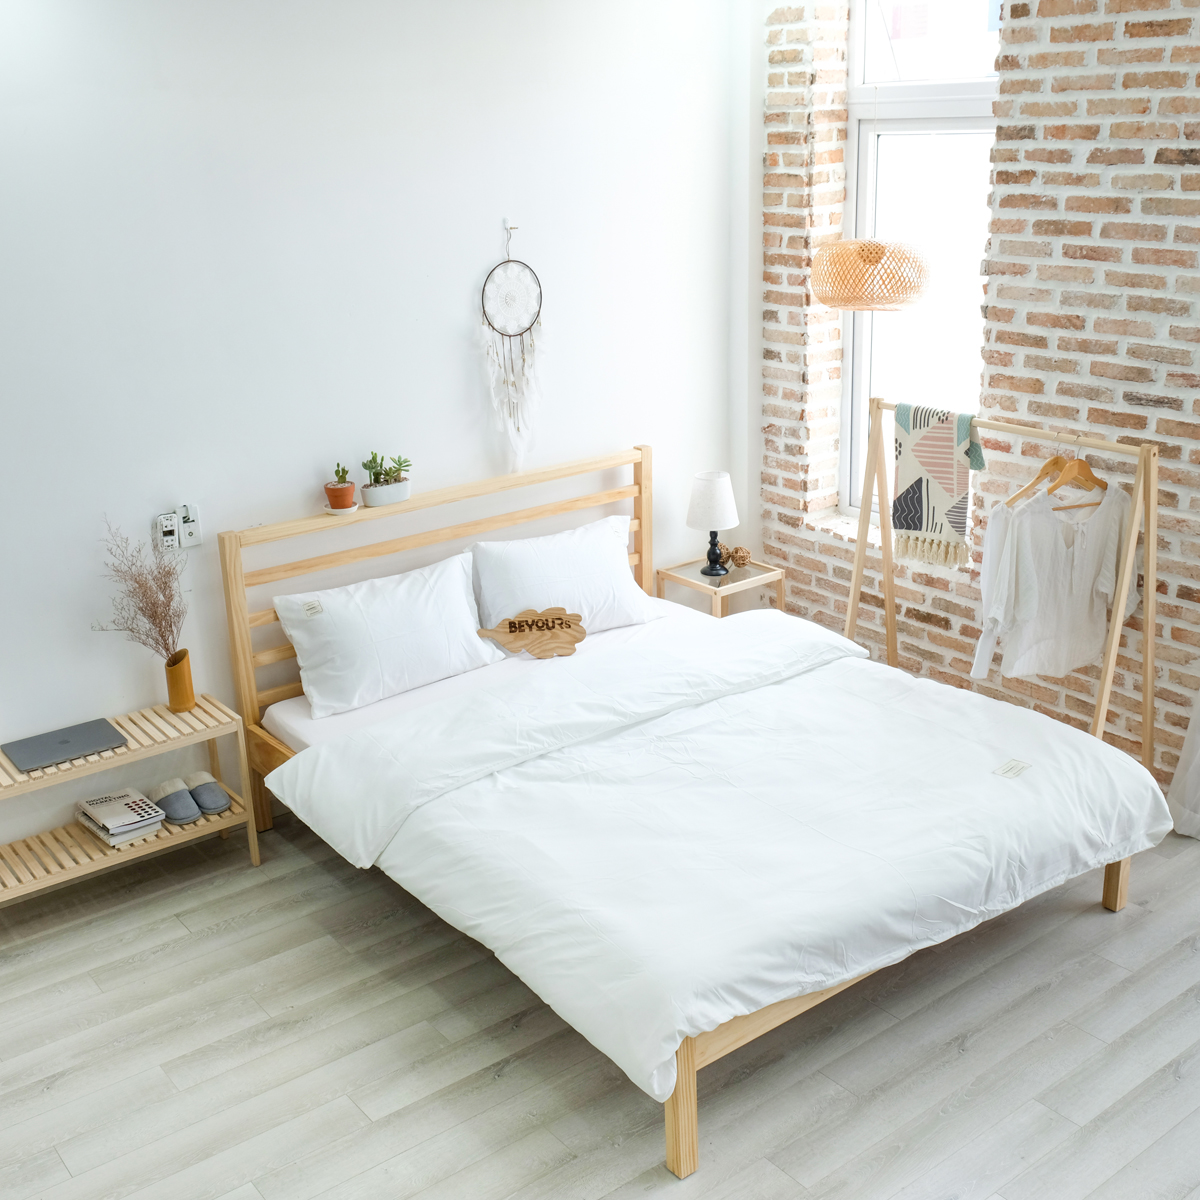 Giường Ngủ Gỗ Nan Simple Bed Nội Thất Kiểu Hàn BEYOURs - Gỗ Tự Nhiên